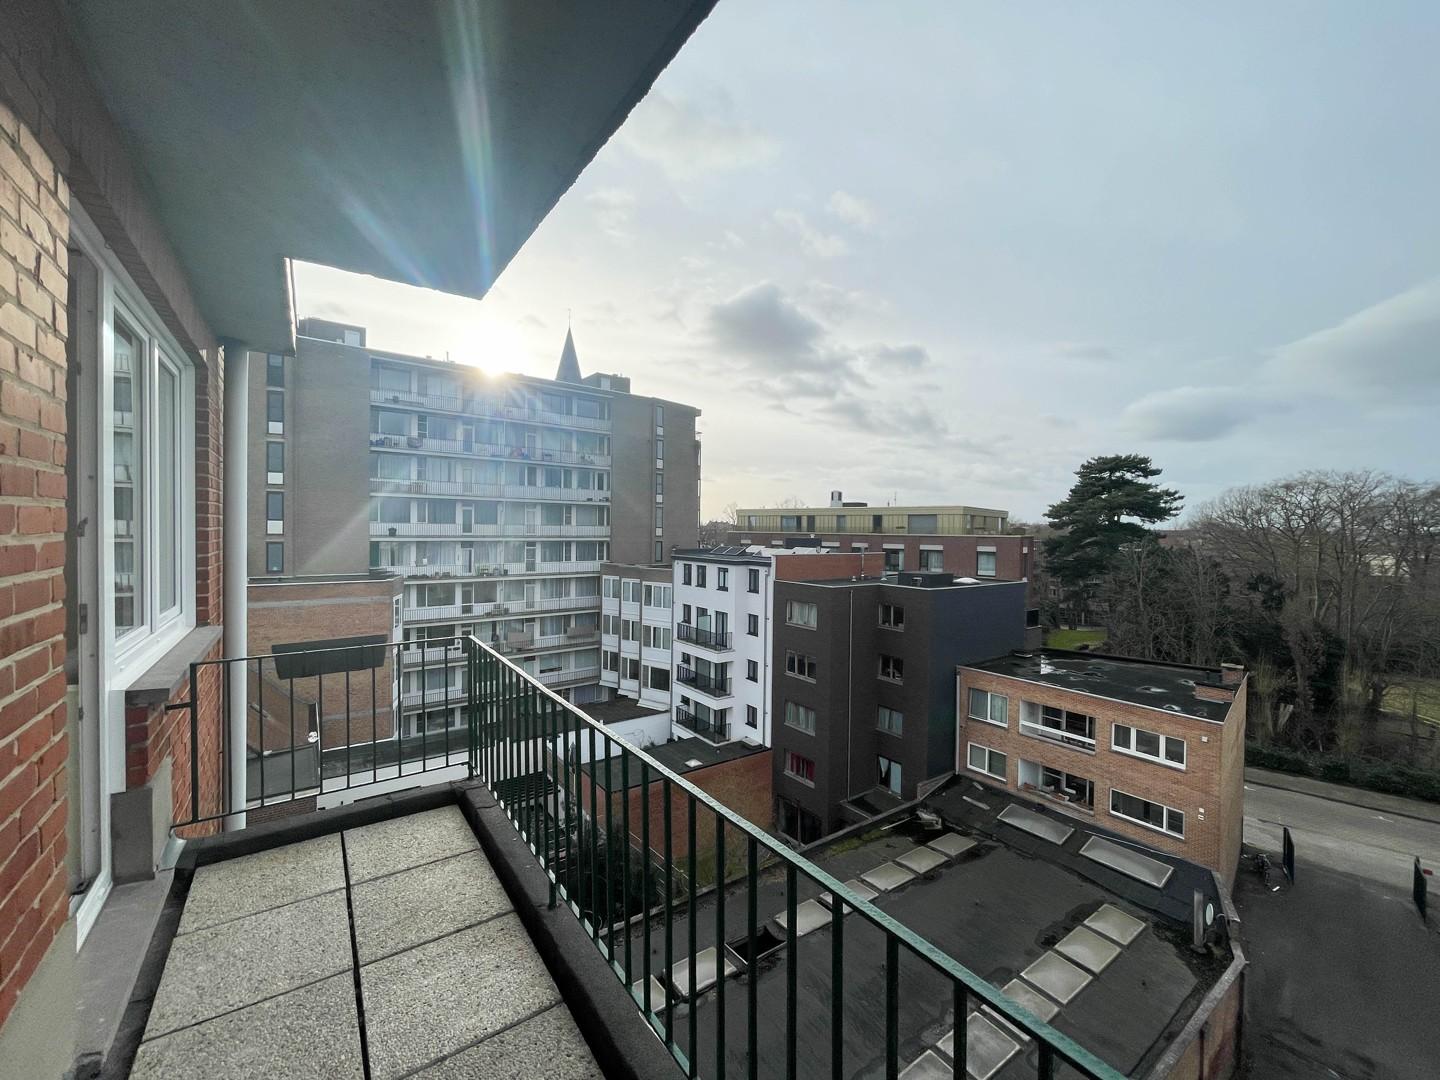 Instapklaar appartement met twee slaapkamers vlakbij Kortrijk centrum!